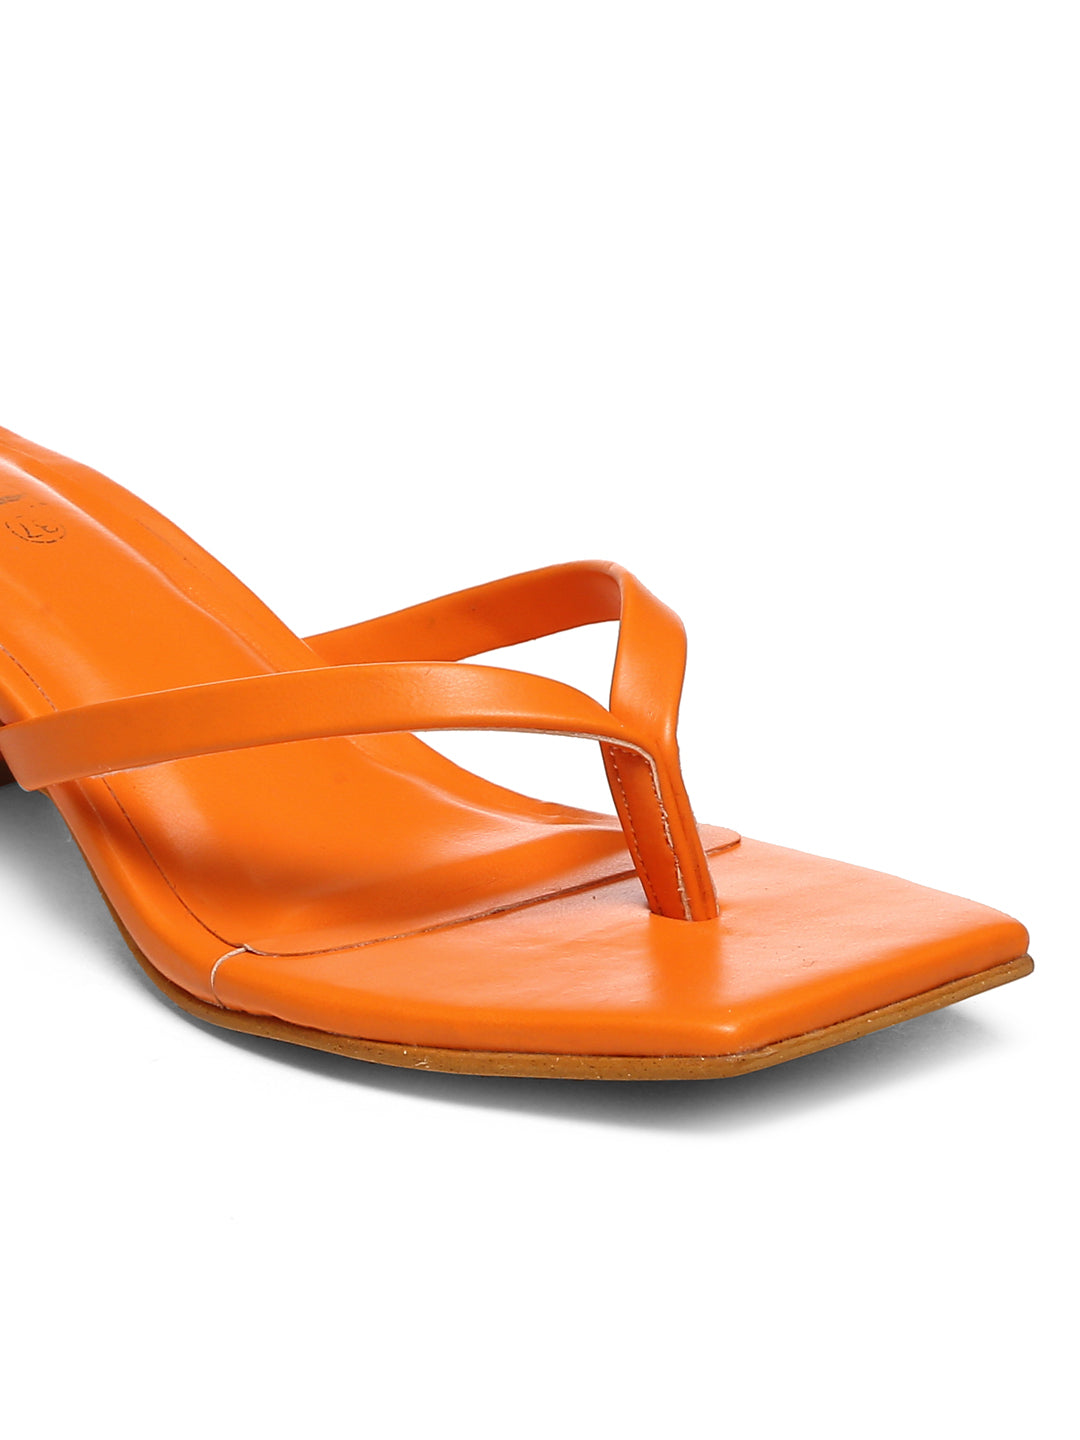 GNIST Orange V shape Block Heel